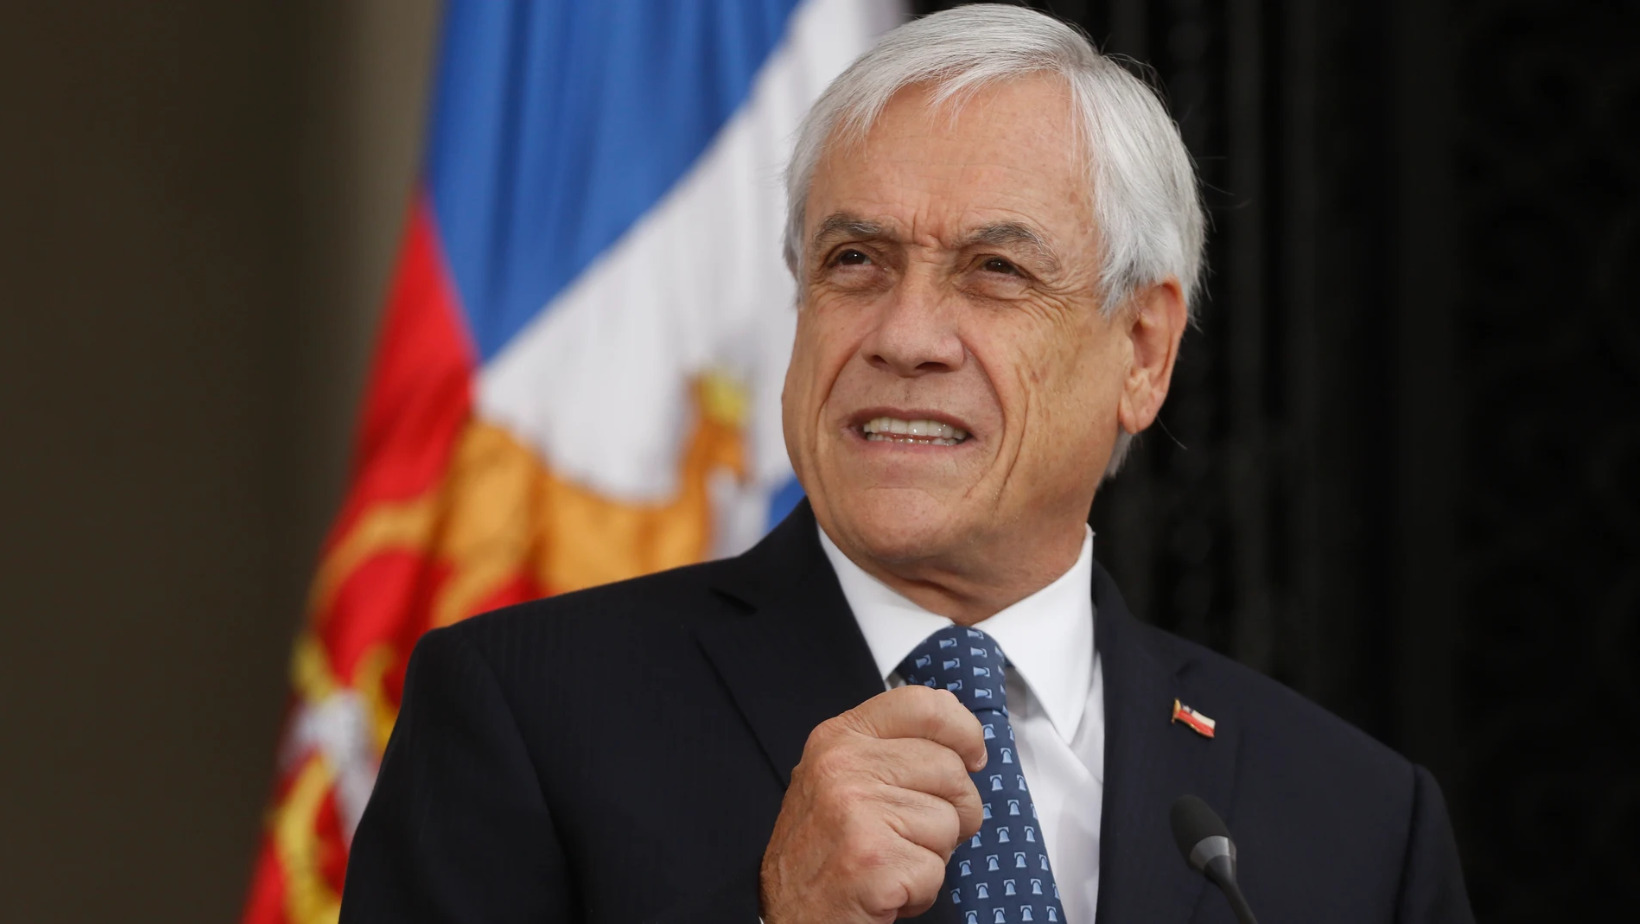 Sebastián Piñera, quien falleció a los 74 años, fue el presidente de la República de Chile entre (2010-2014 y 2018-2022). Foto: Fuente externa